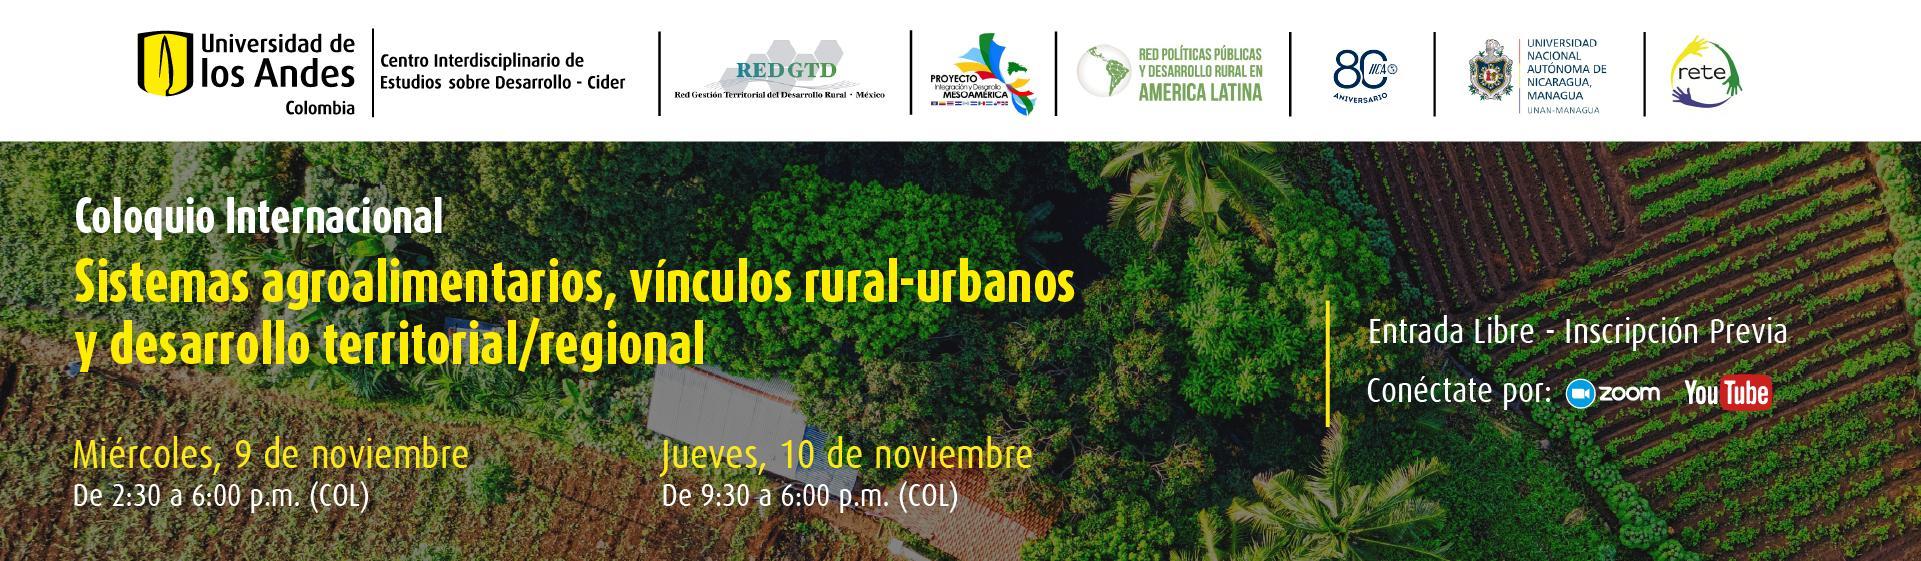 Coloquio Internacional. Sistemas agroalimentarios, vínculos rural-urbanos y desarrollo territorial/regional